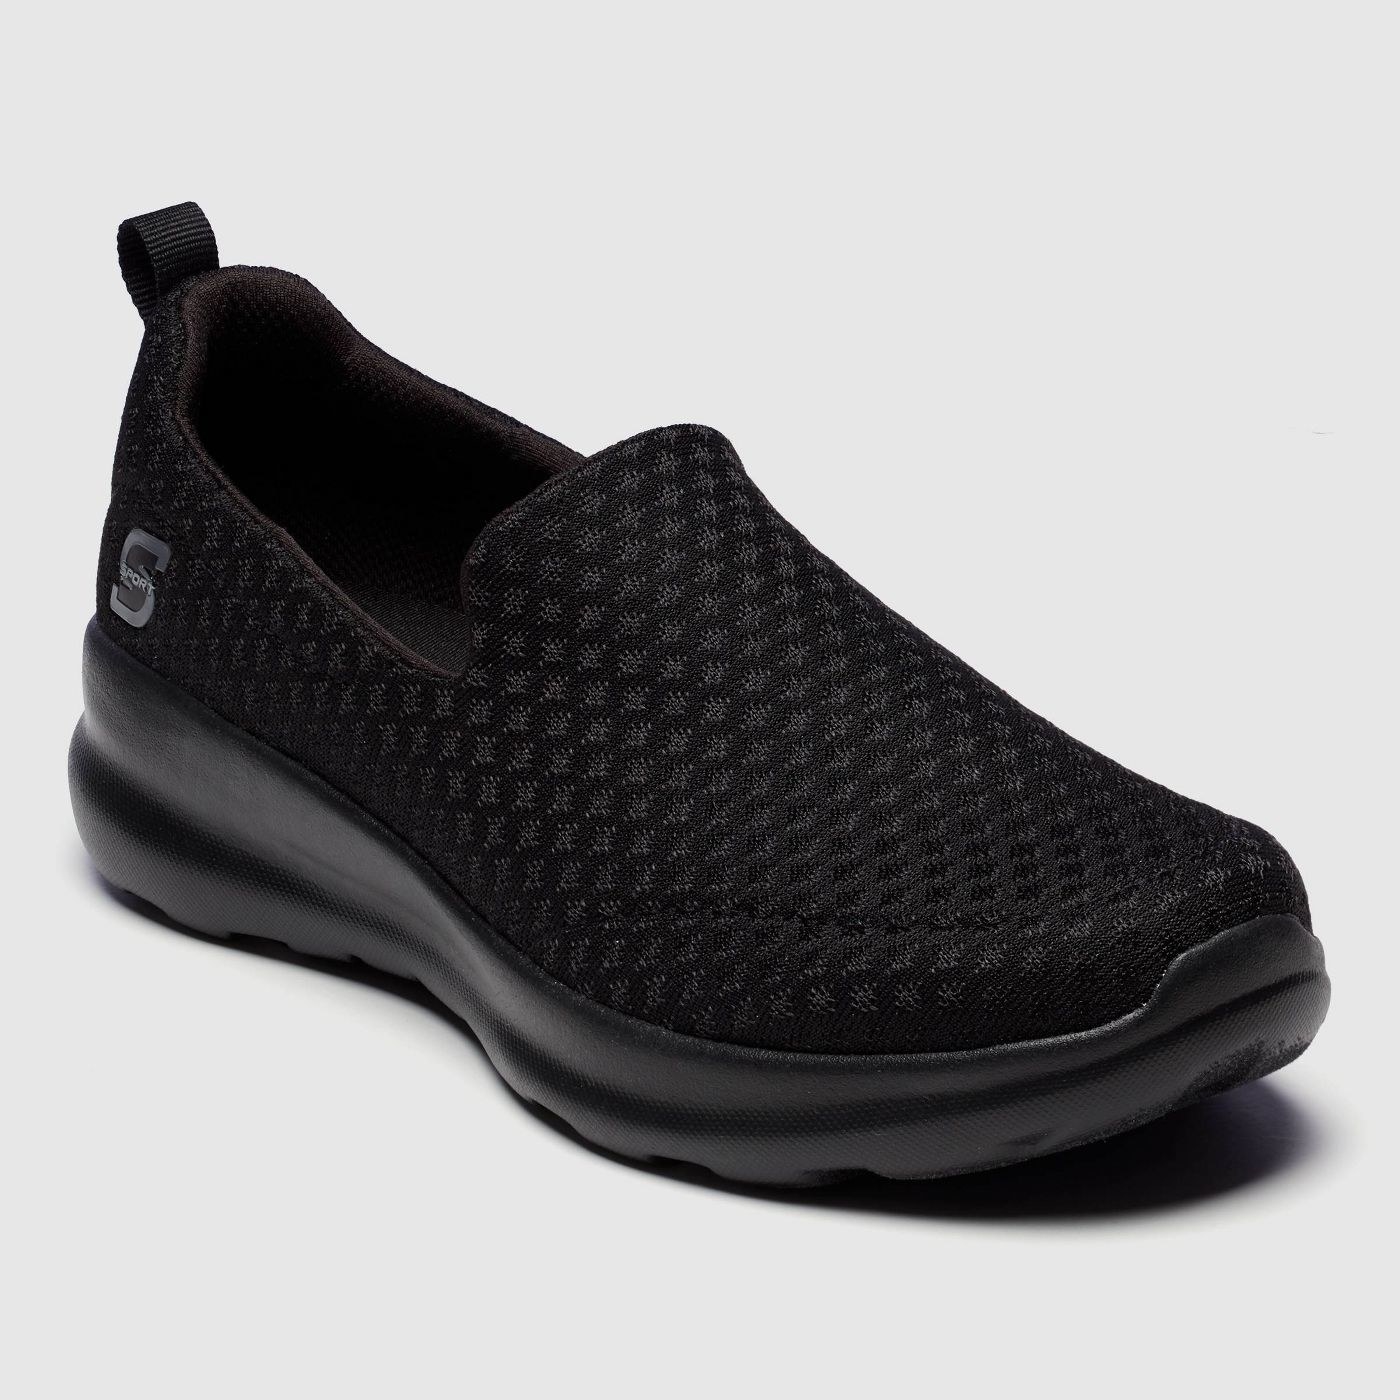 The black pair of Skechers slip-on sneakers